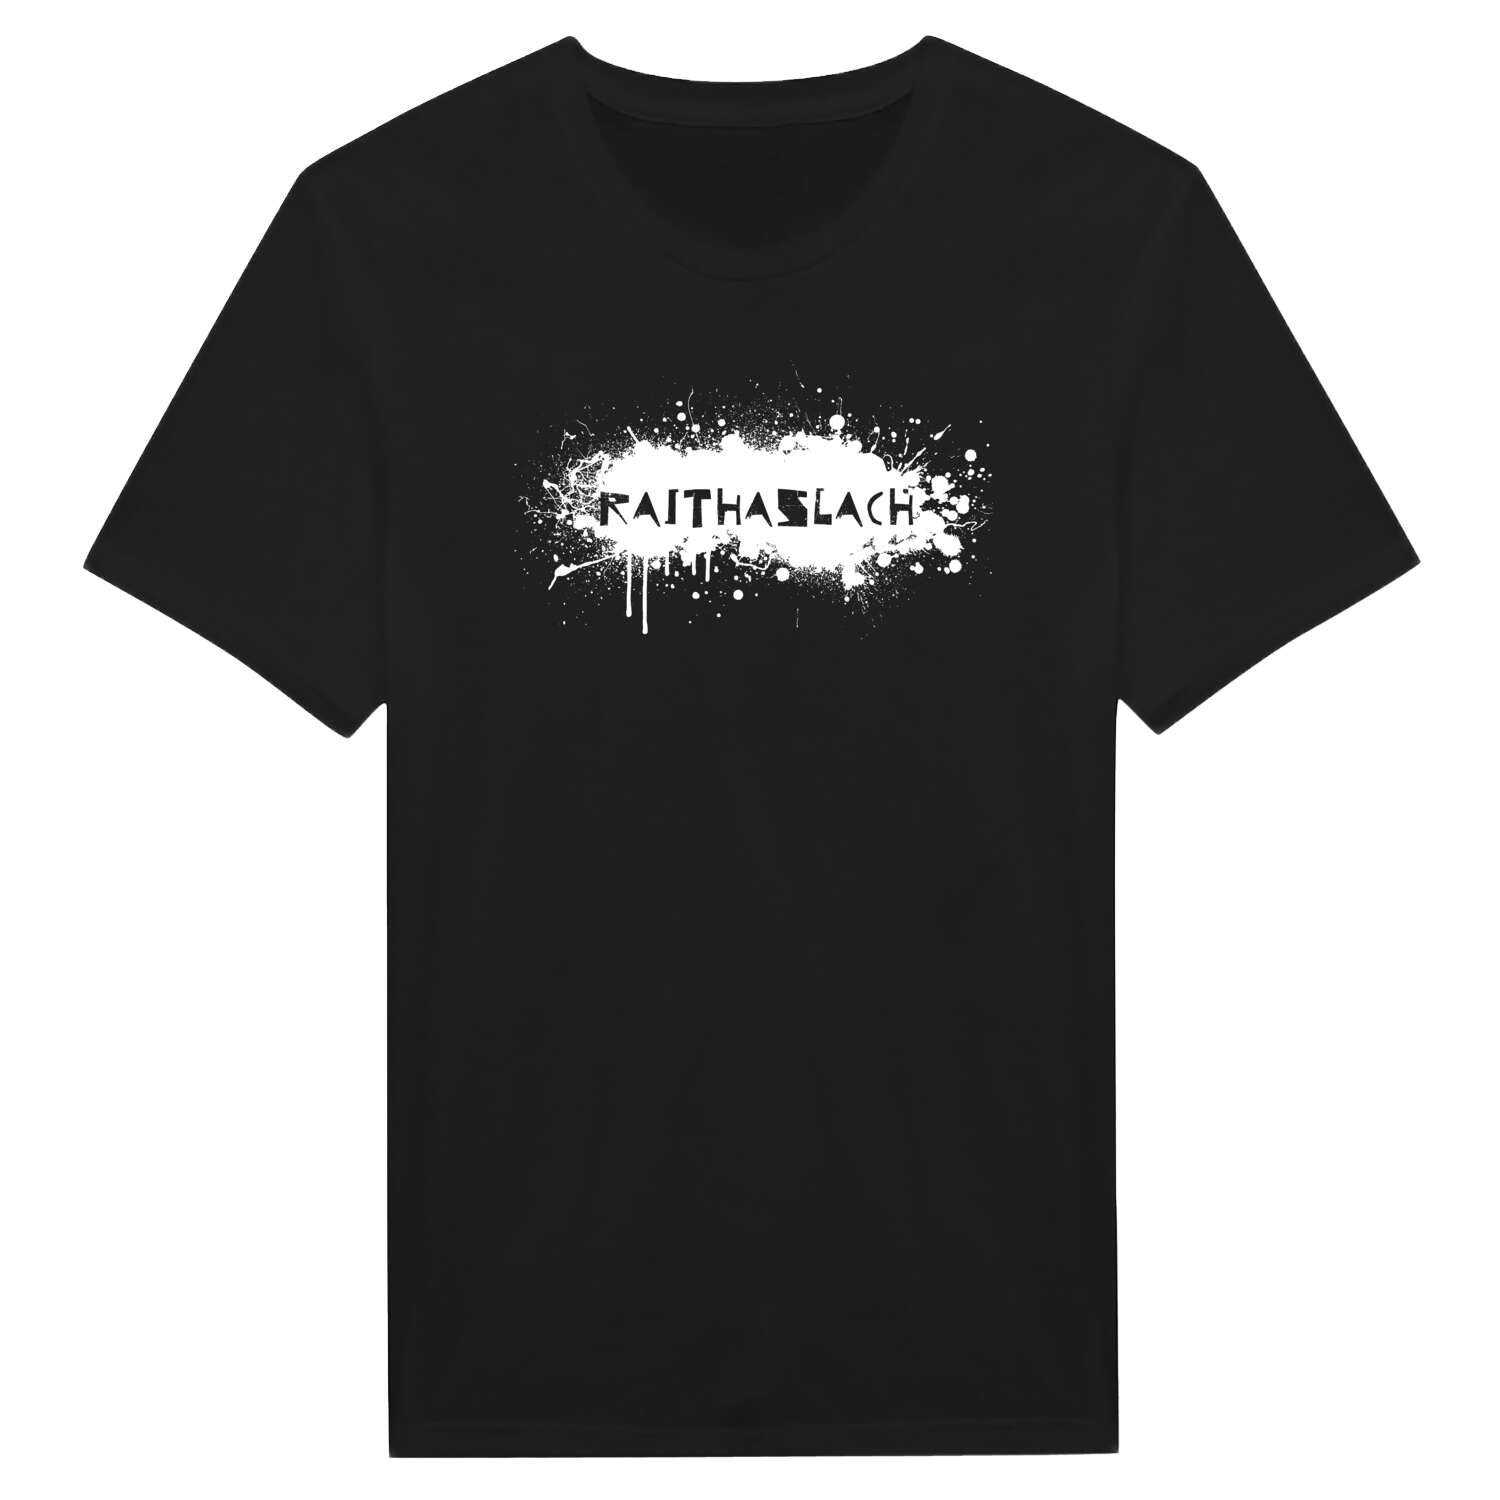 Raithaslach T-Shirt »Paint Splash Punk«